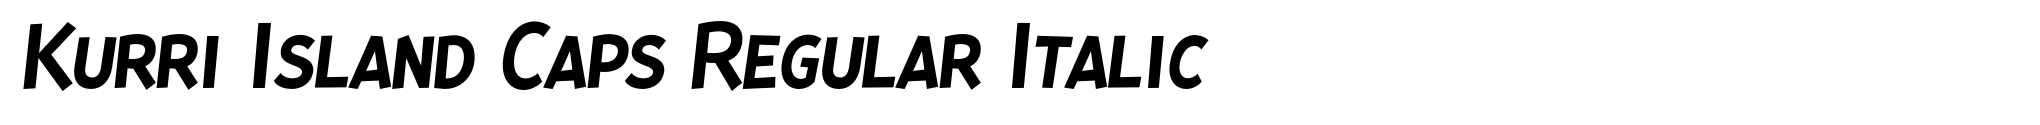 Kurri Island Caps Regular Italic image